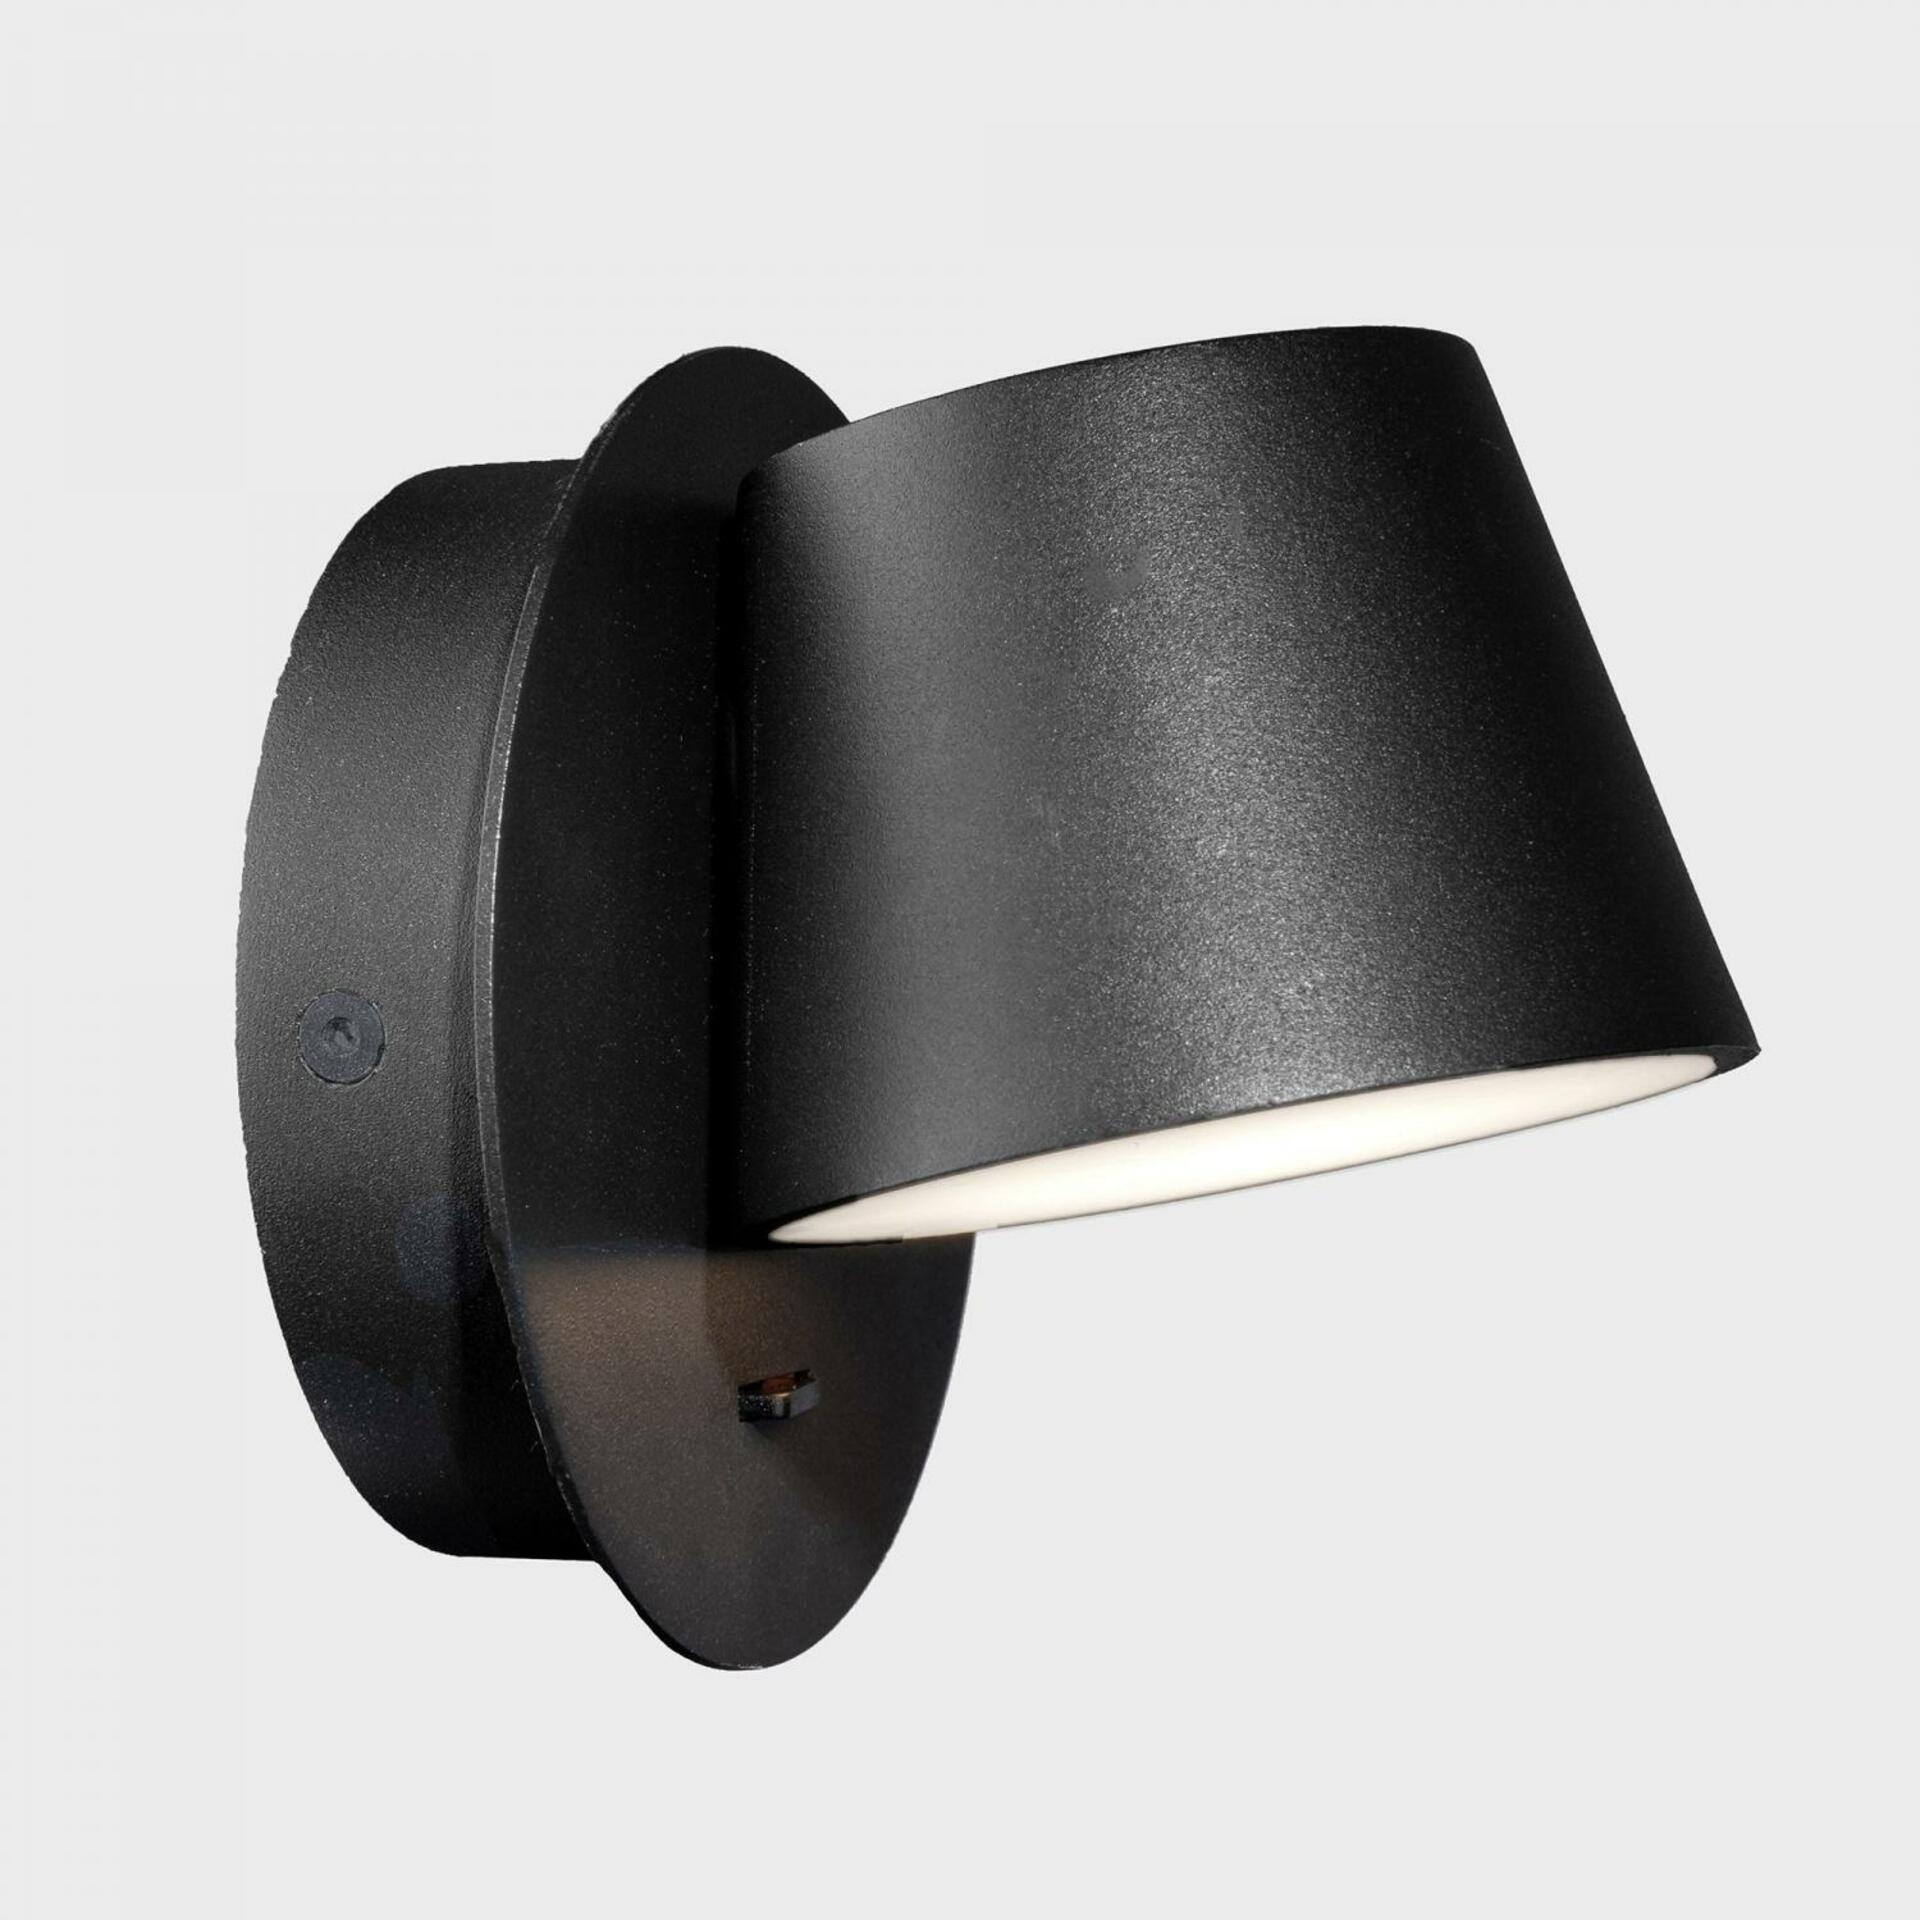 KOHL LIGHTING KOHL-Lighting BOT nástěnné svítidlo pr. 117 mm černá 6 W CRI 80 3000K Non-Dimm